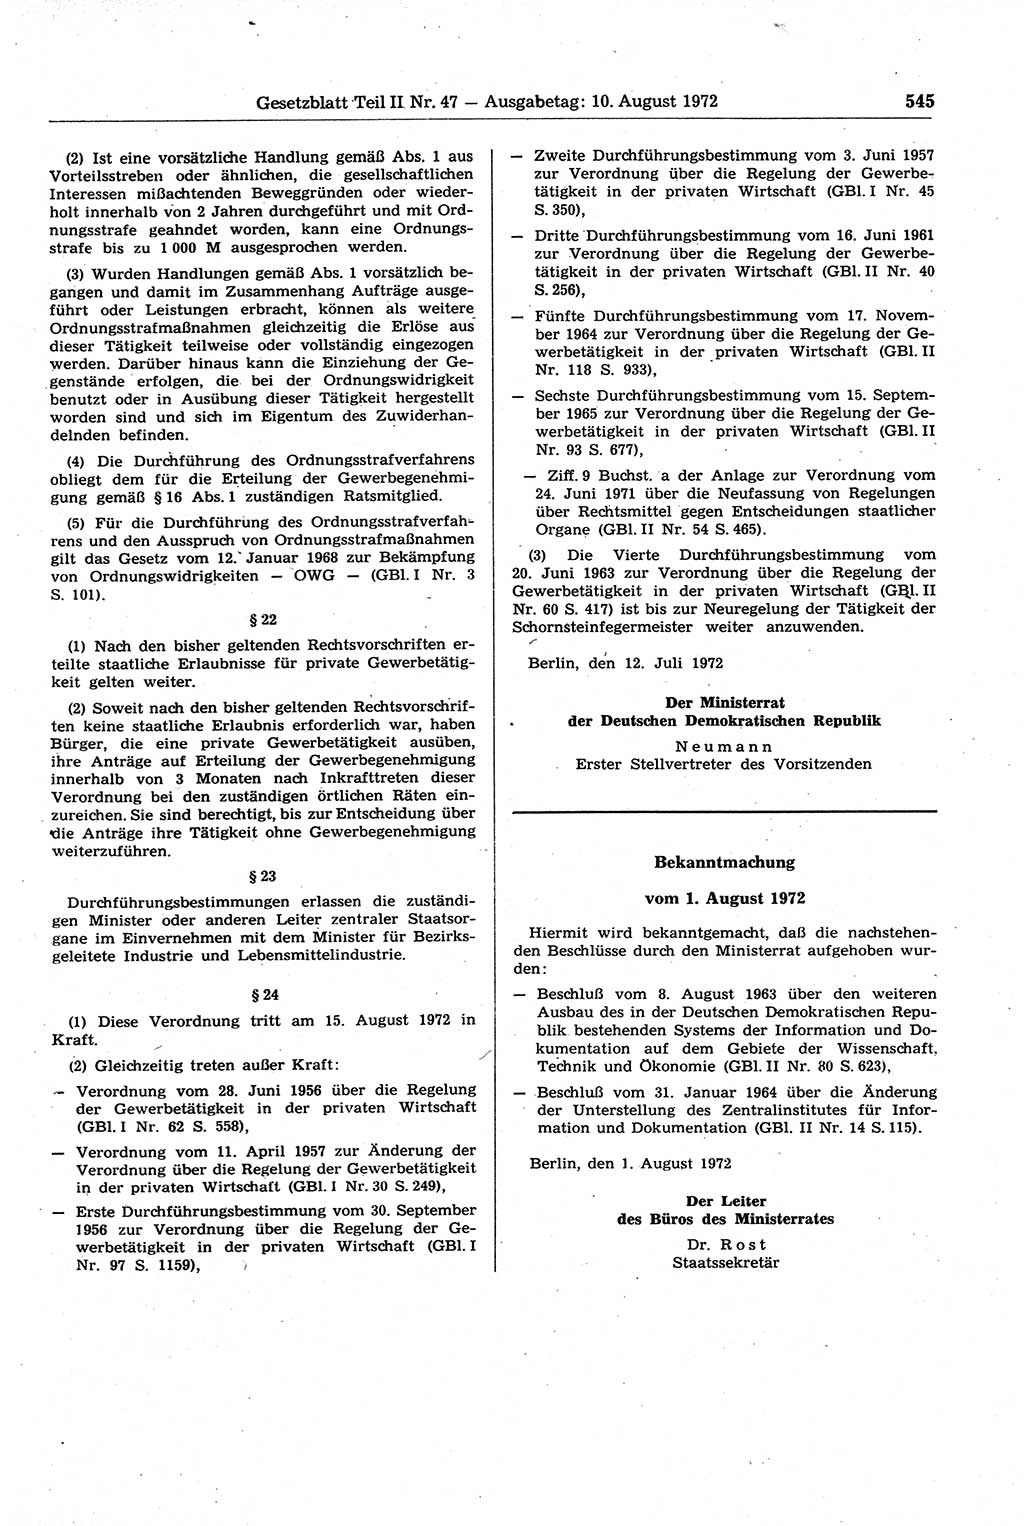 Gesetzblatt (GBl.) der Deutschen Demokratischen Republik (DDR) Teil ⅠⅠ 1972, Seite 545 (GBl. DDR ⅠⅠ 1972, S. 545)